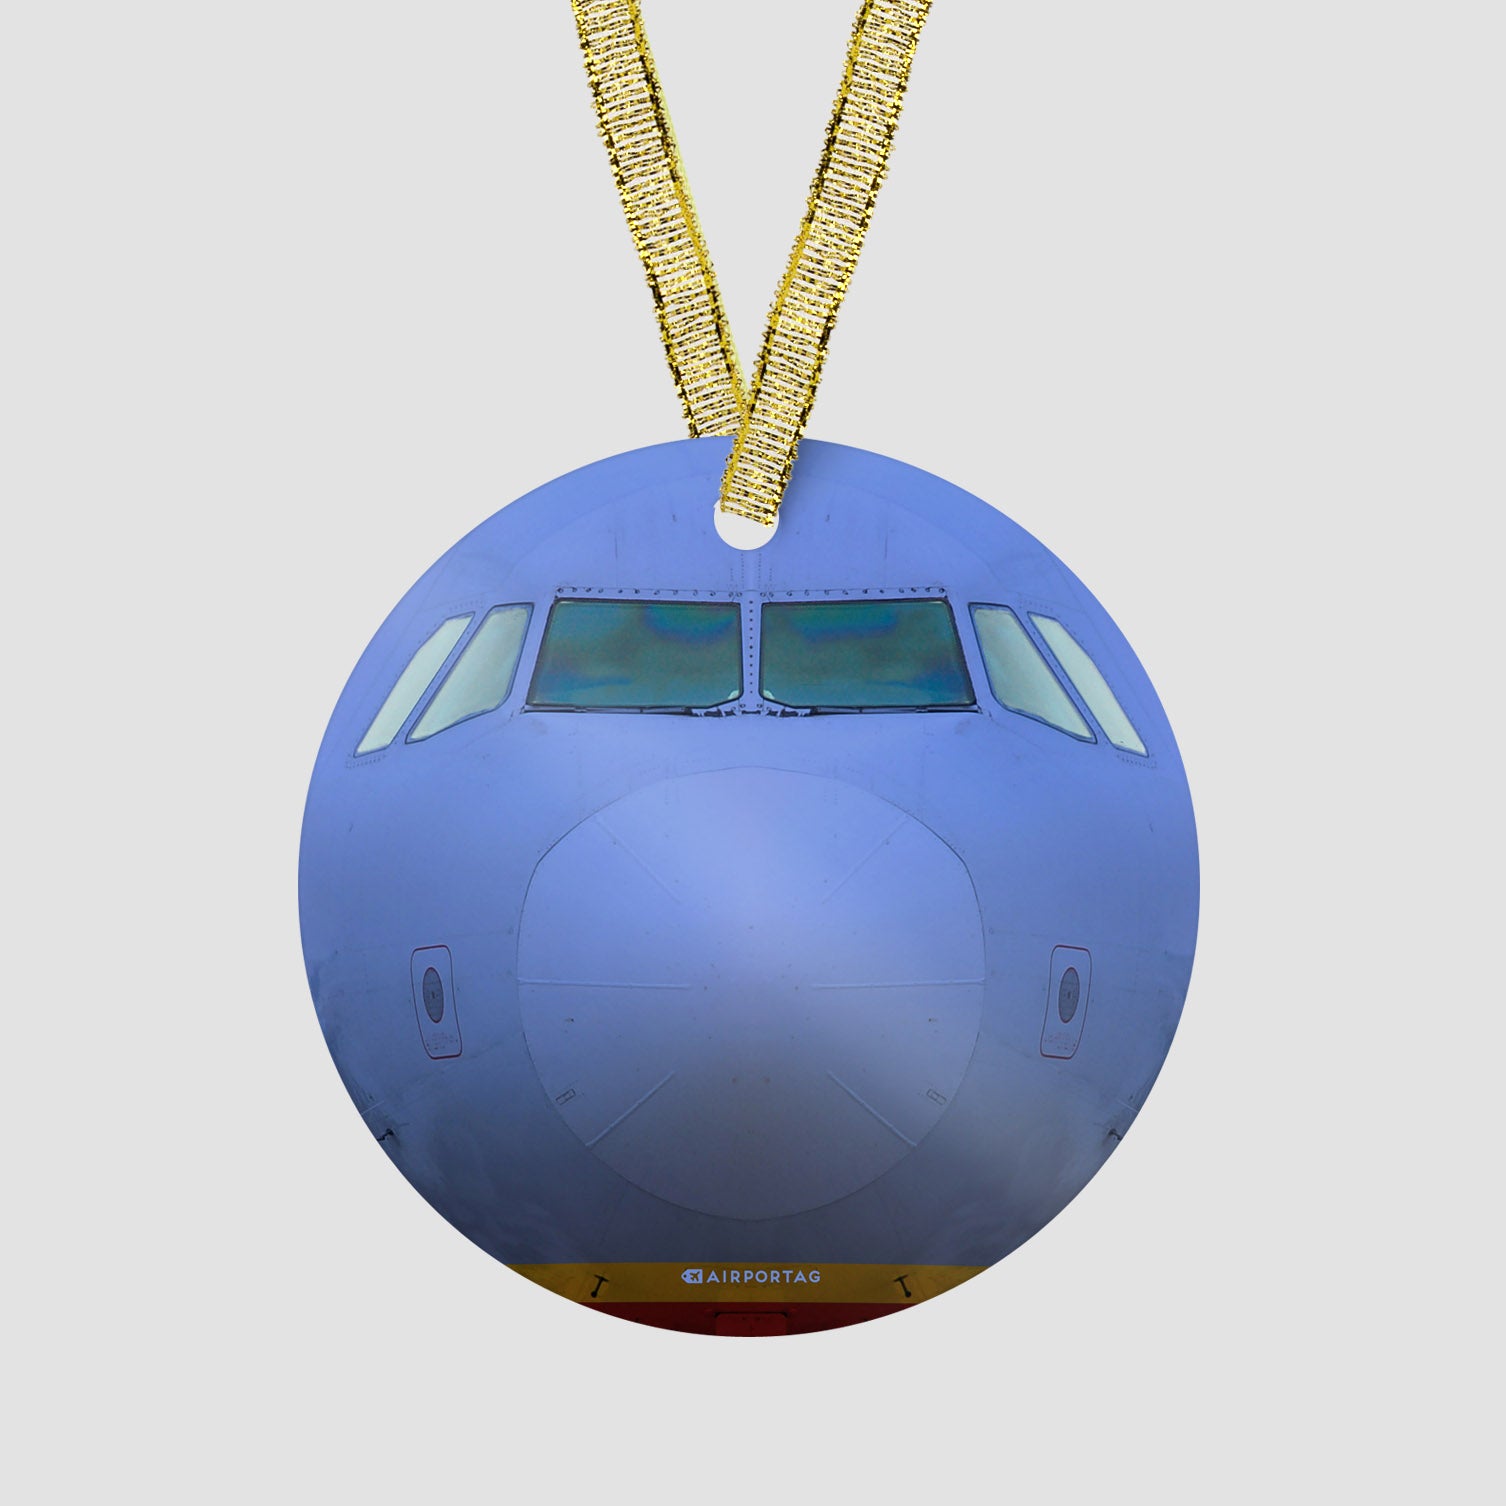 WN Airplane - Ornament - Airportag